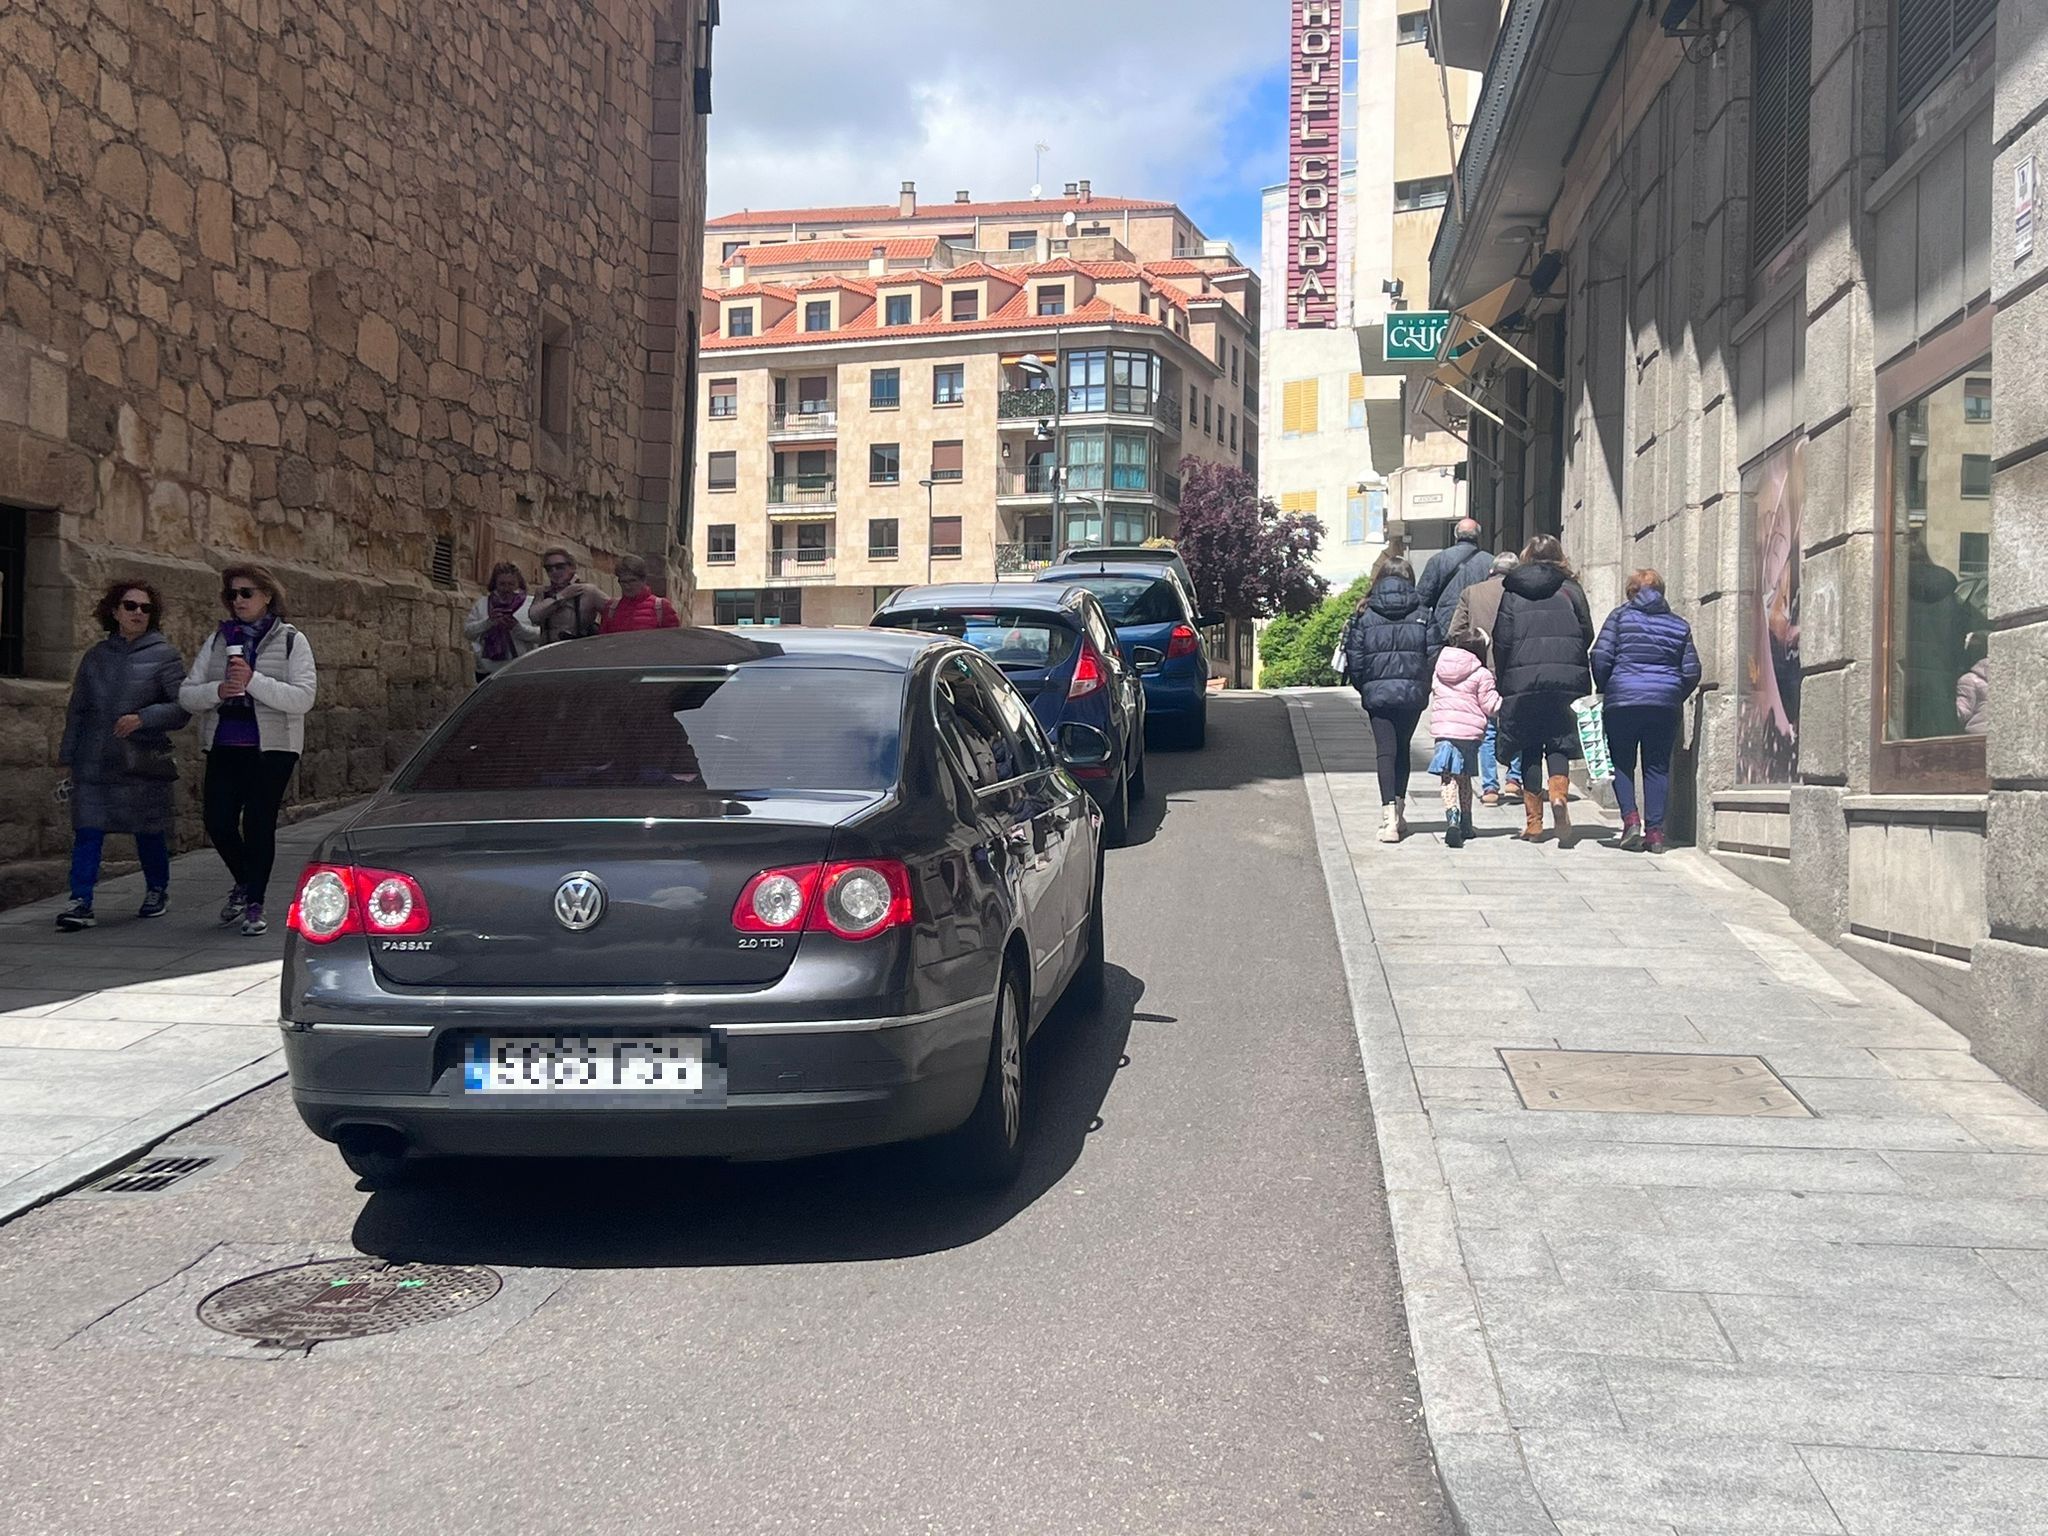 Largas colas en los aparcamientos de Salamanca capital por el puente del 1 de mayo. Fotos S24H